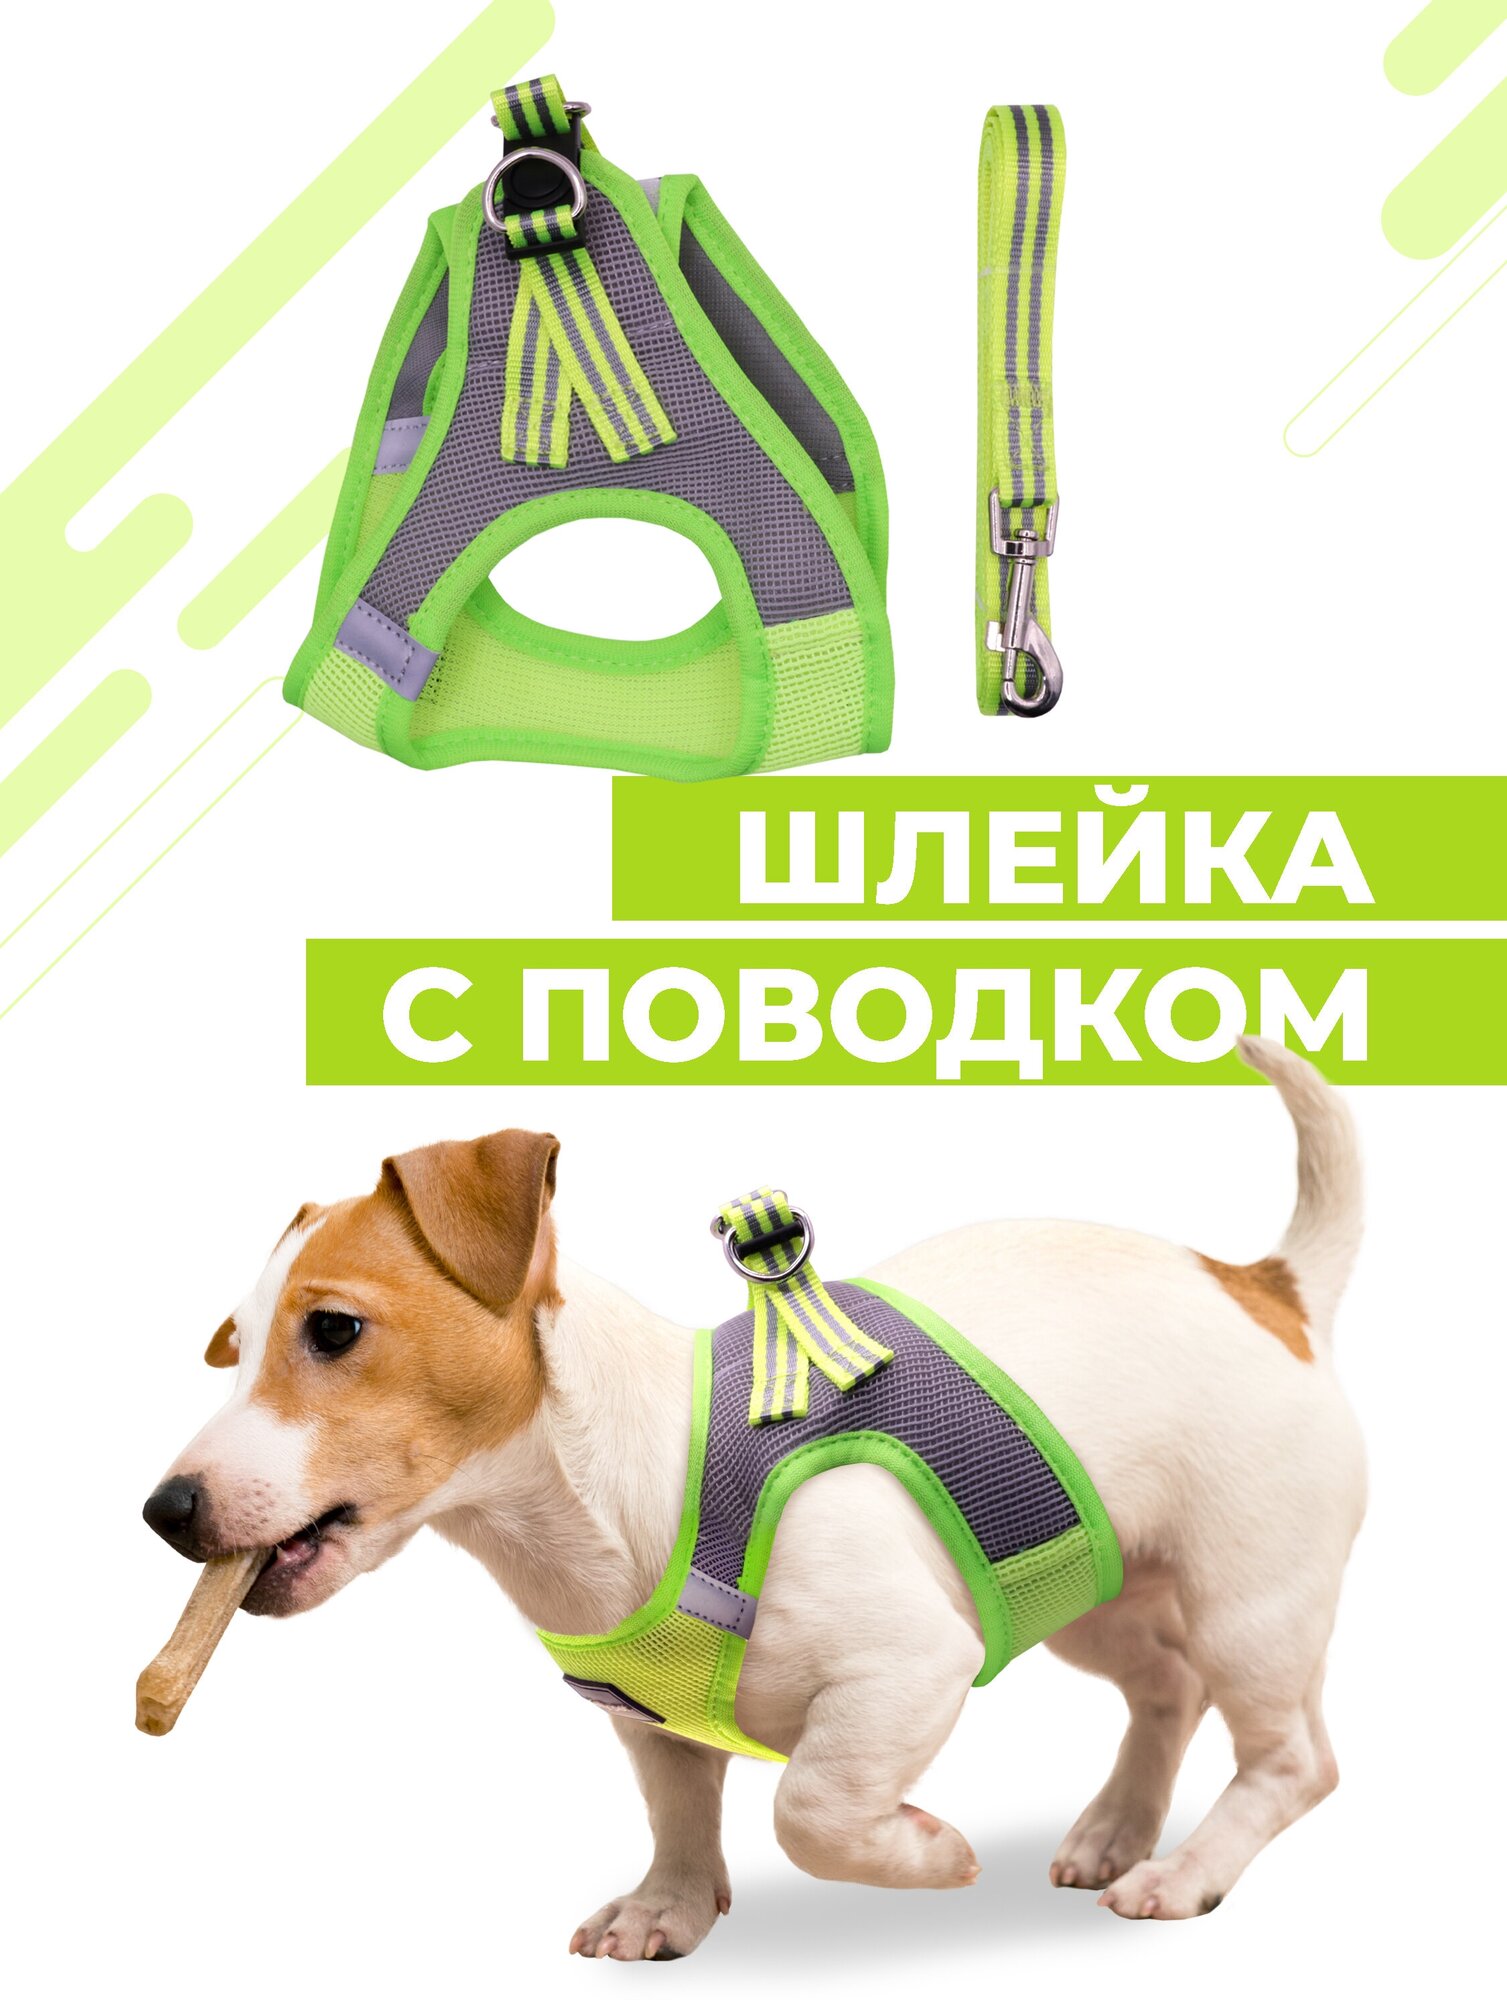 Шлейка для собак и кошек Boomshakalaka, со светоотражающими элементами, с поводком 120 см, размер L(обхват 48-54 см), вес до 12 кг, цвет желто-зеленый